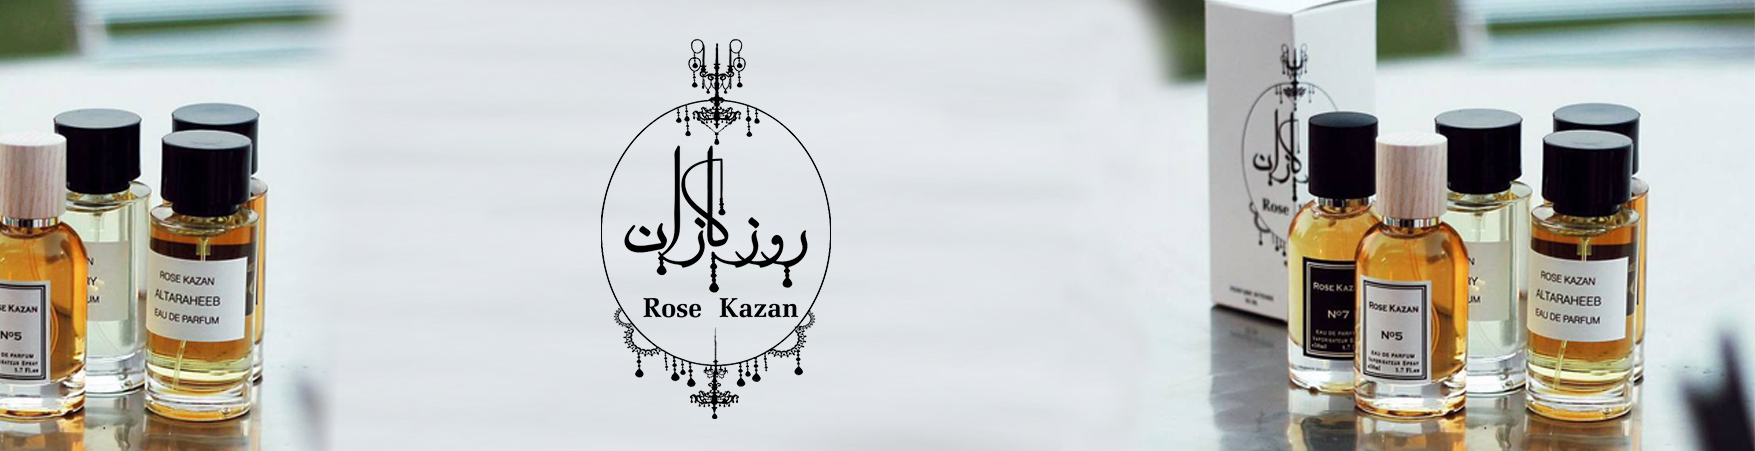 Rose Kazan